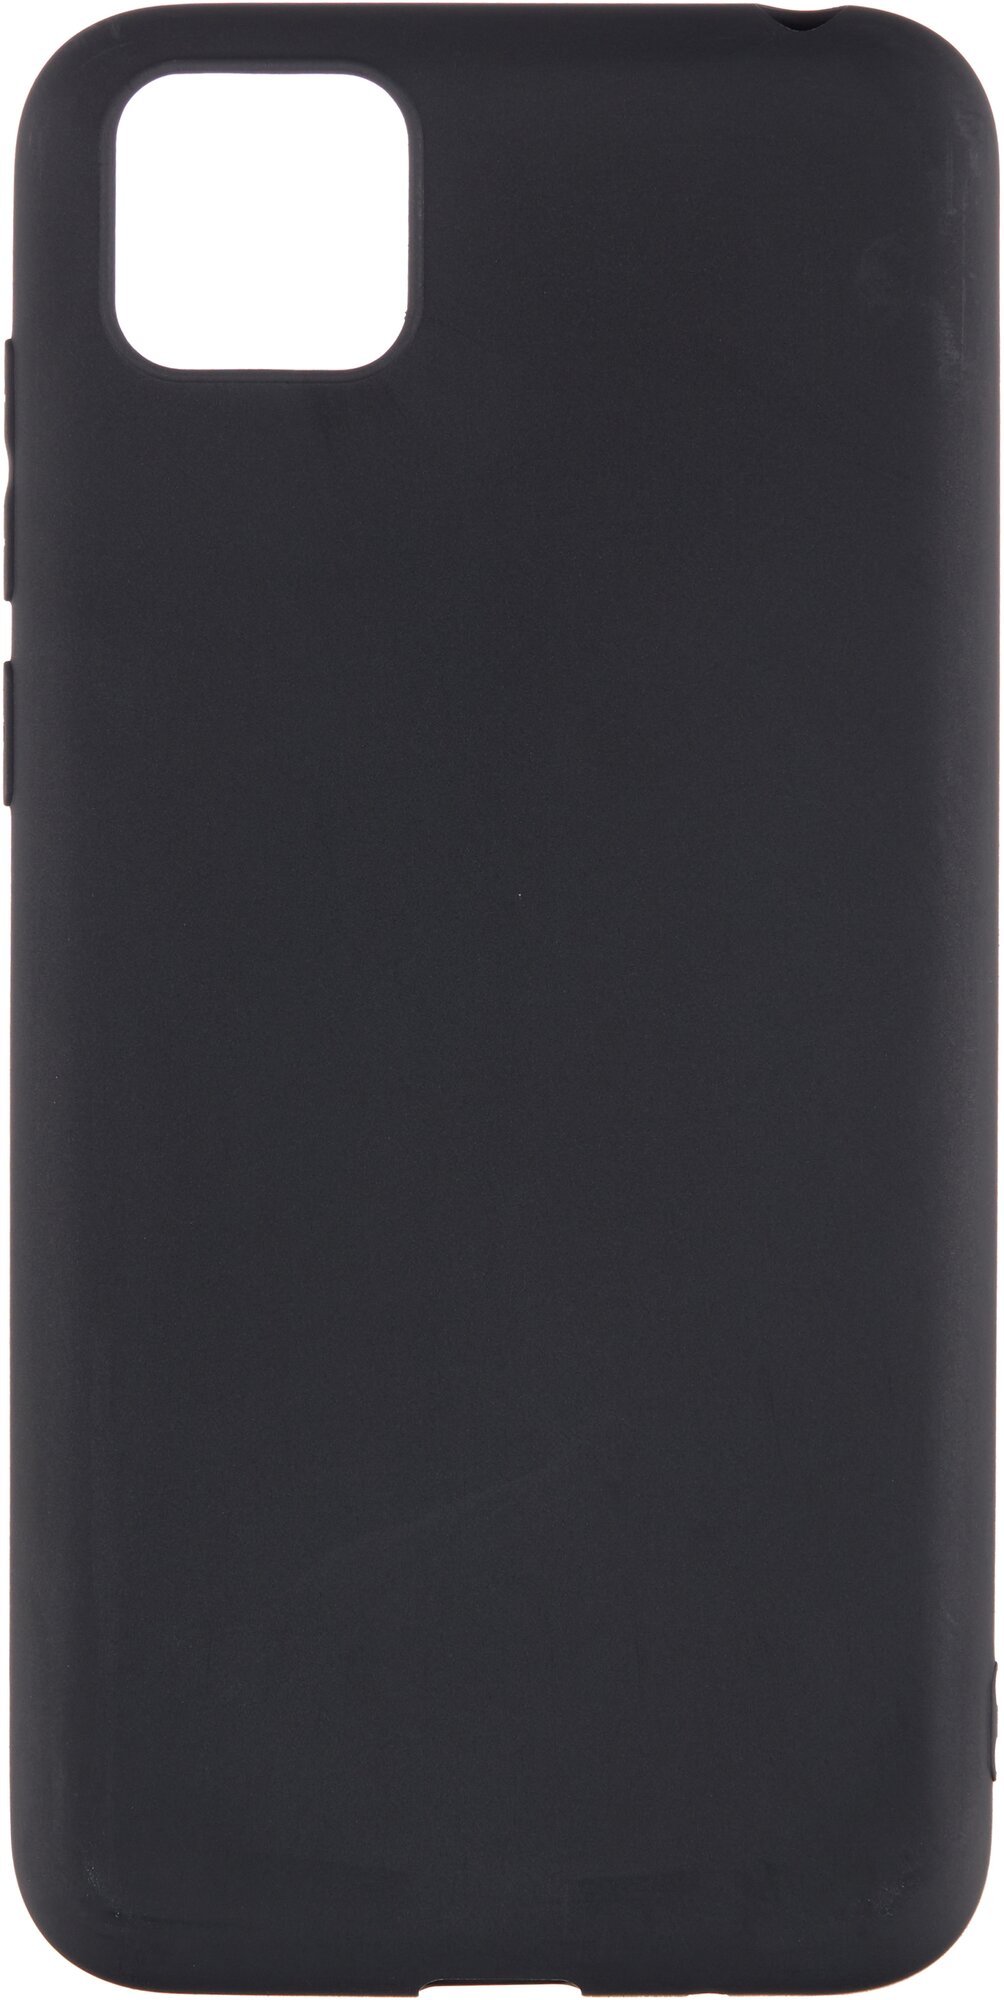 Защитный чехол для смартфона Huawei Honor 9S/Хавей Хонор 9С черный